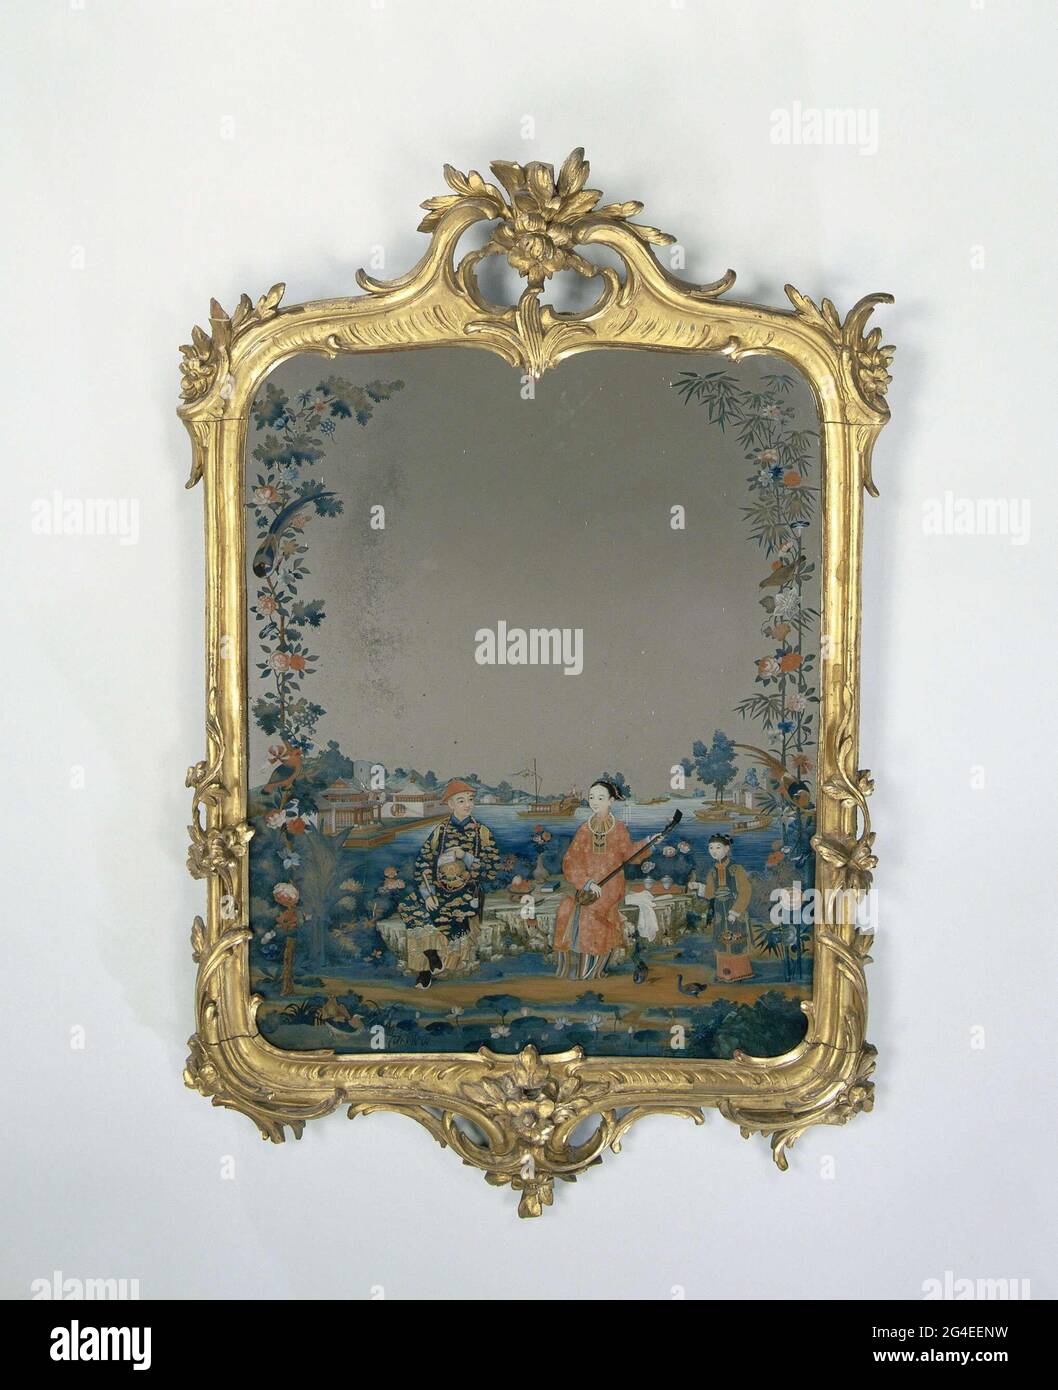 Questi specchi, dipinti a Canton (Cina), sono stati appositamente  realizzati per l'esportazione. In seguito furono incorniciati nei Paesi  Bassi nello stile rococò dell'epoca attuale. Così sono stati specchi  esotici adattati per